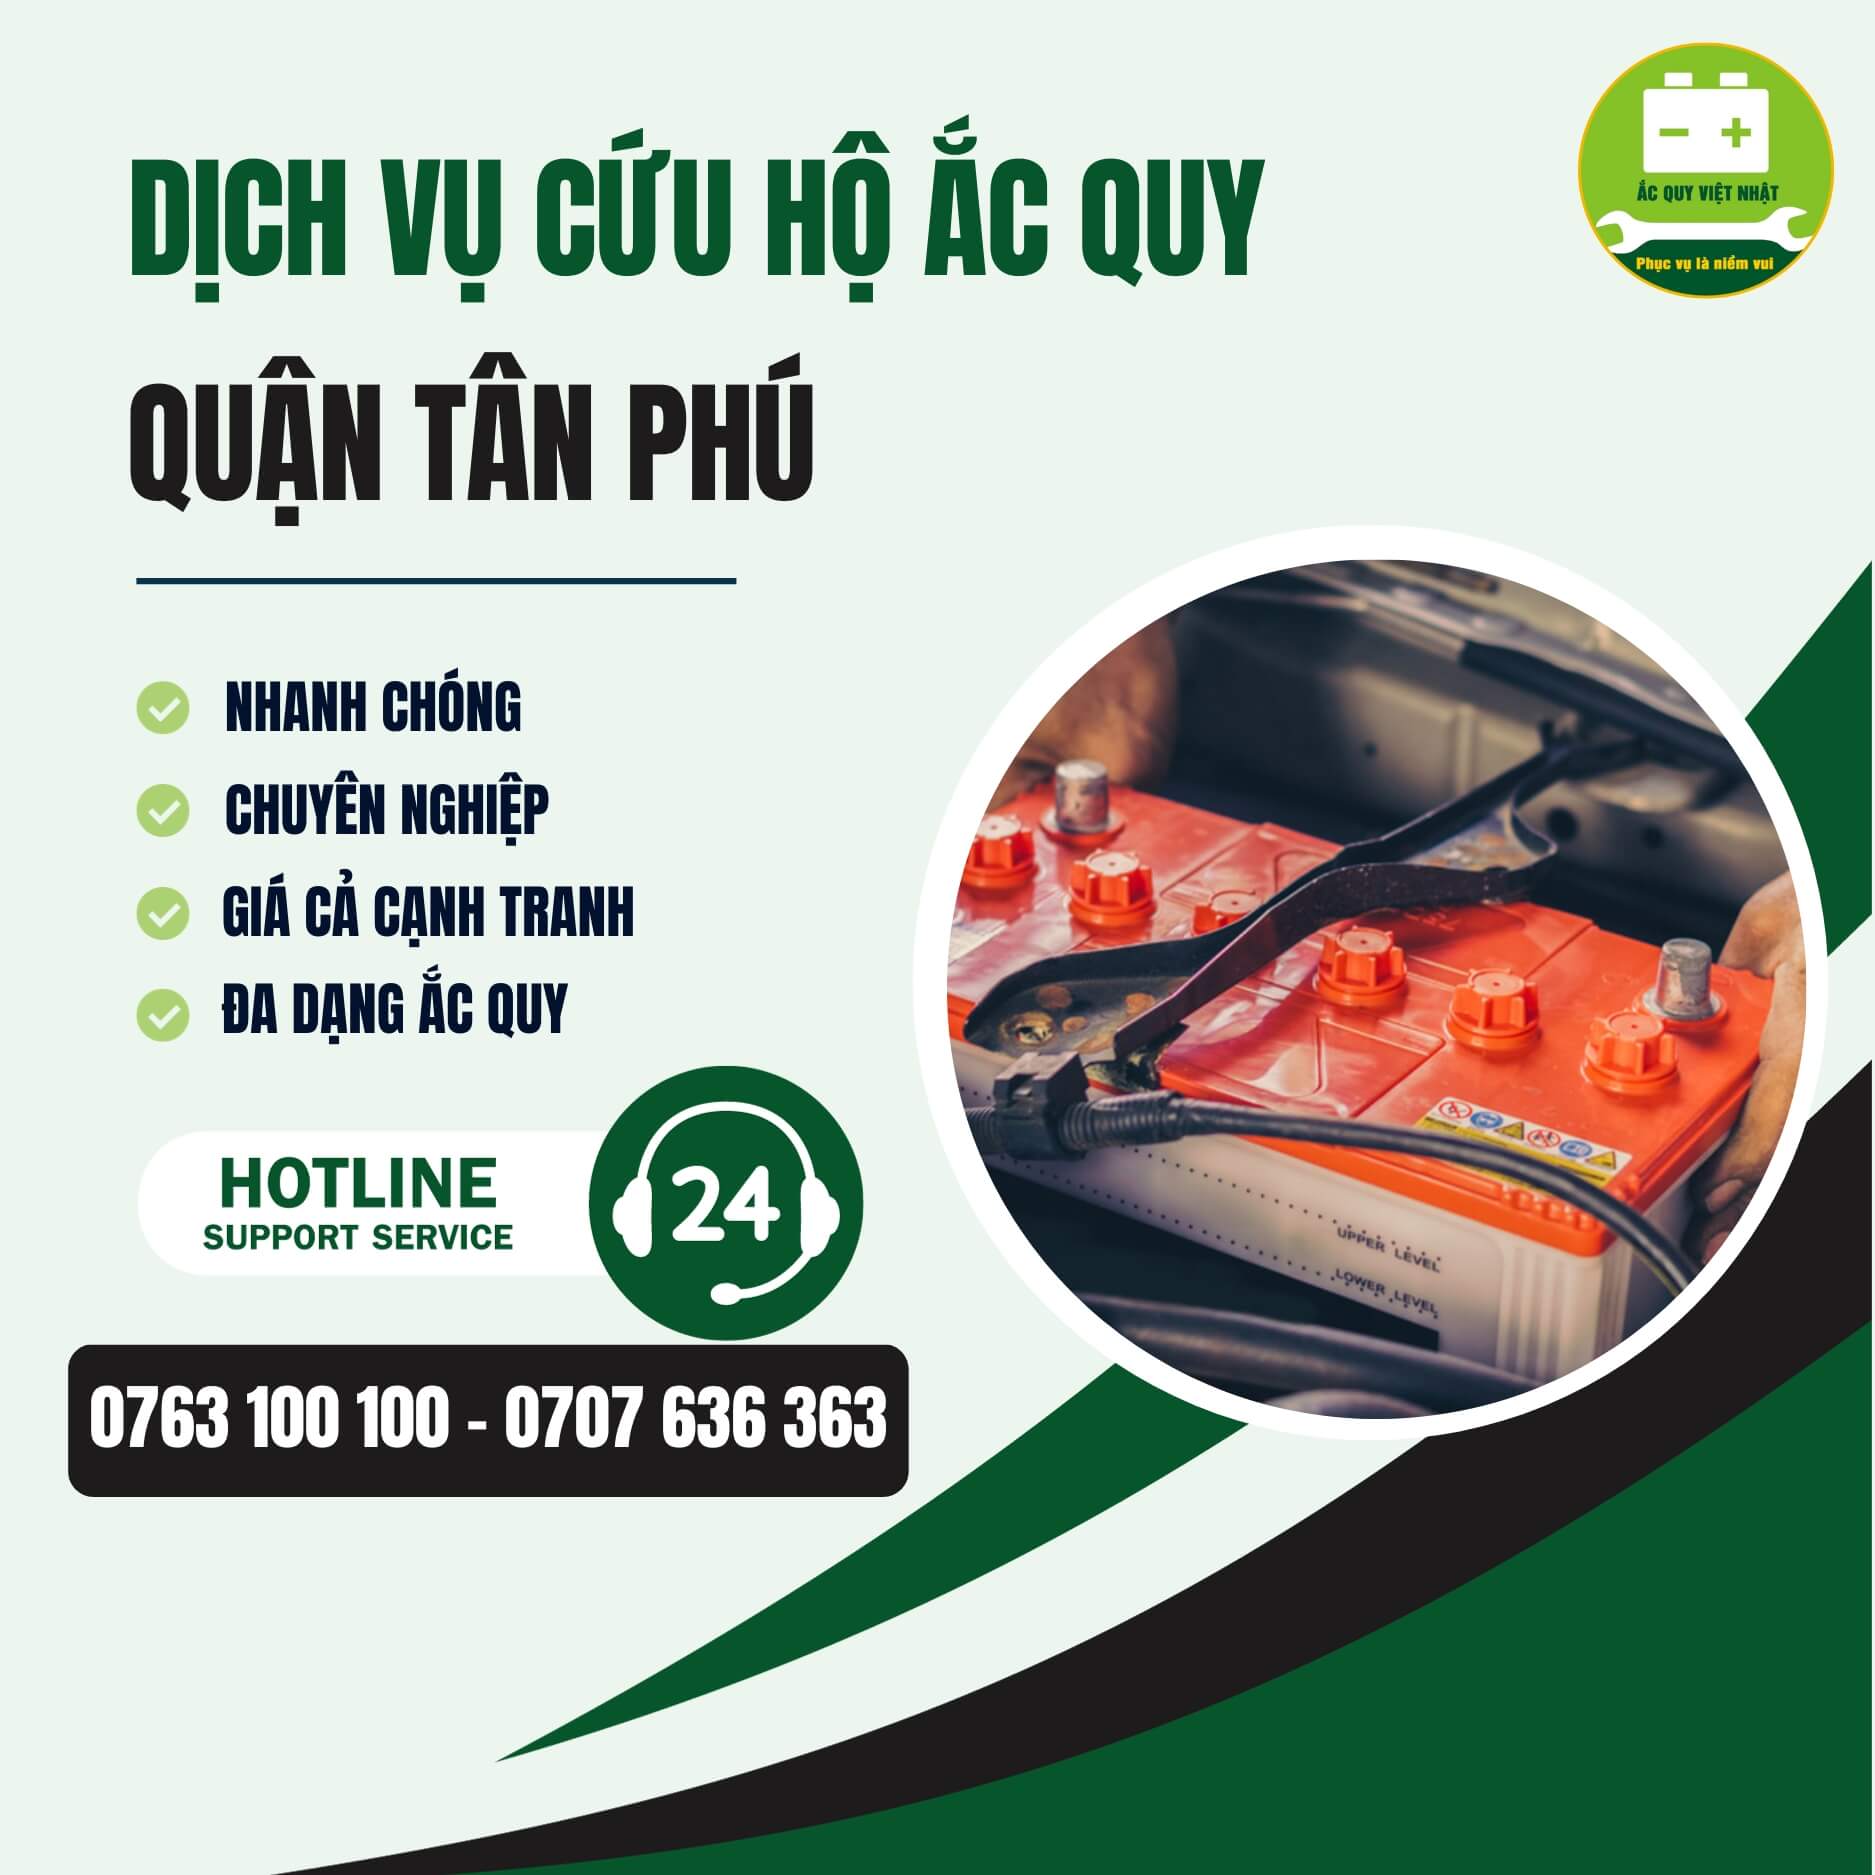 Thông tin dịch vụ cứu hộ ắc quy quận Tân Phú